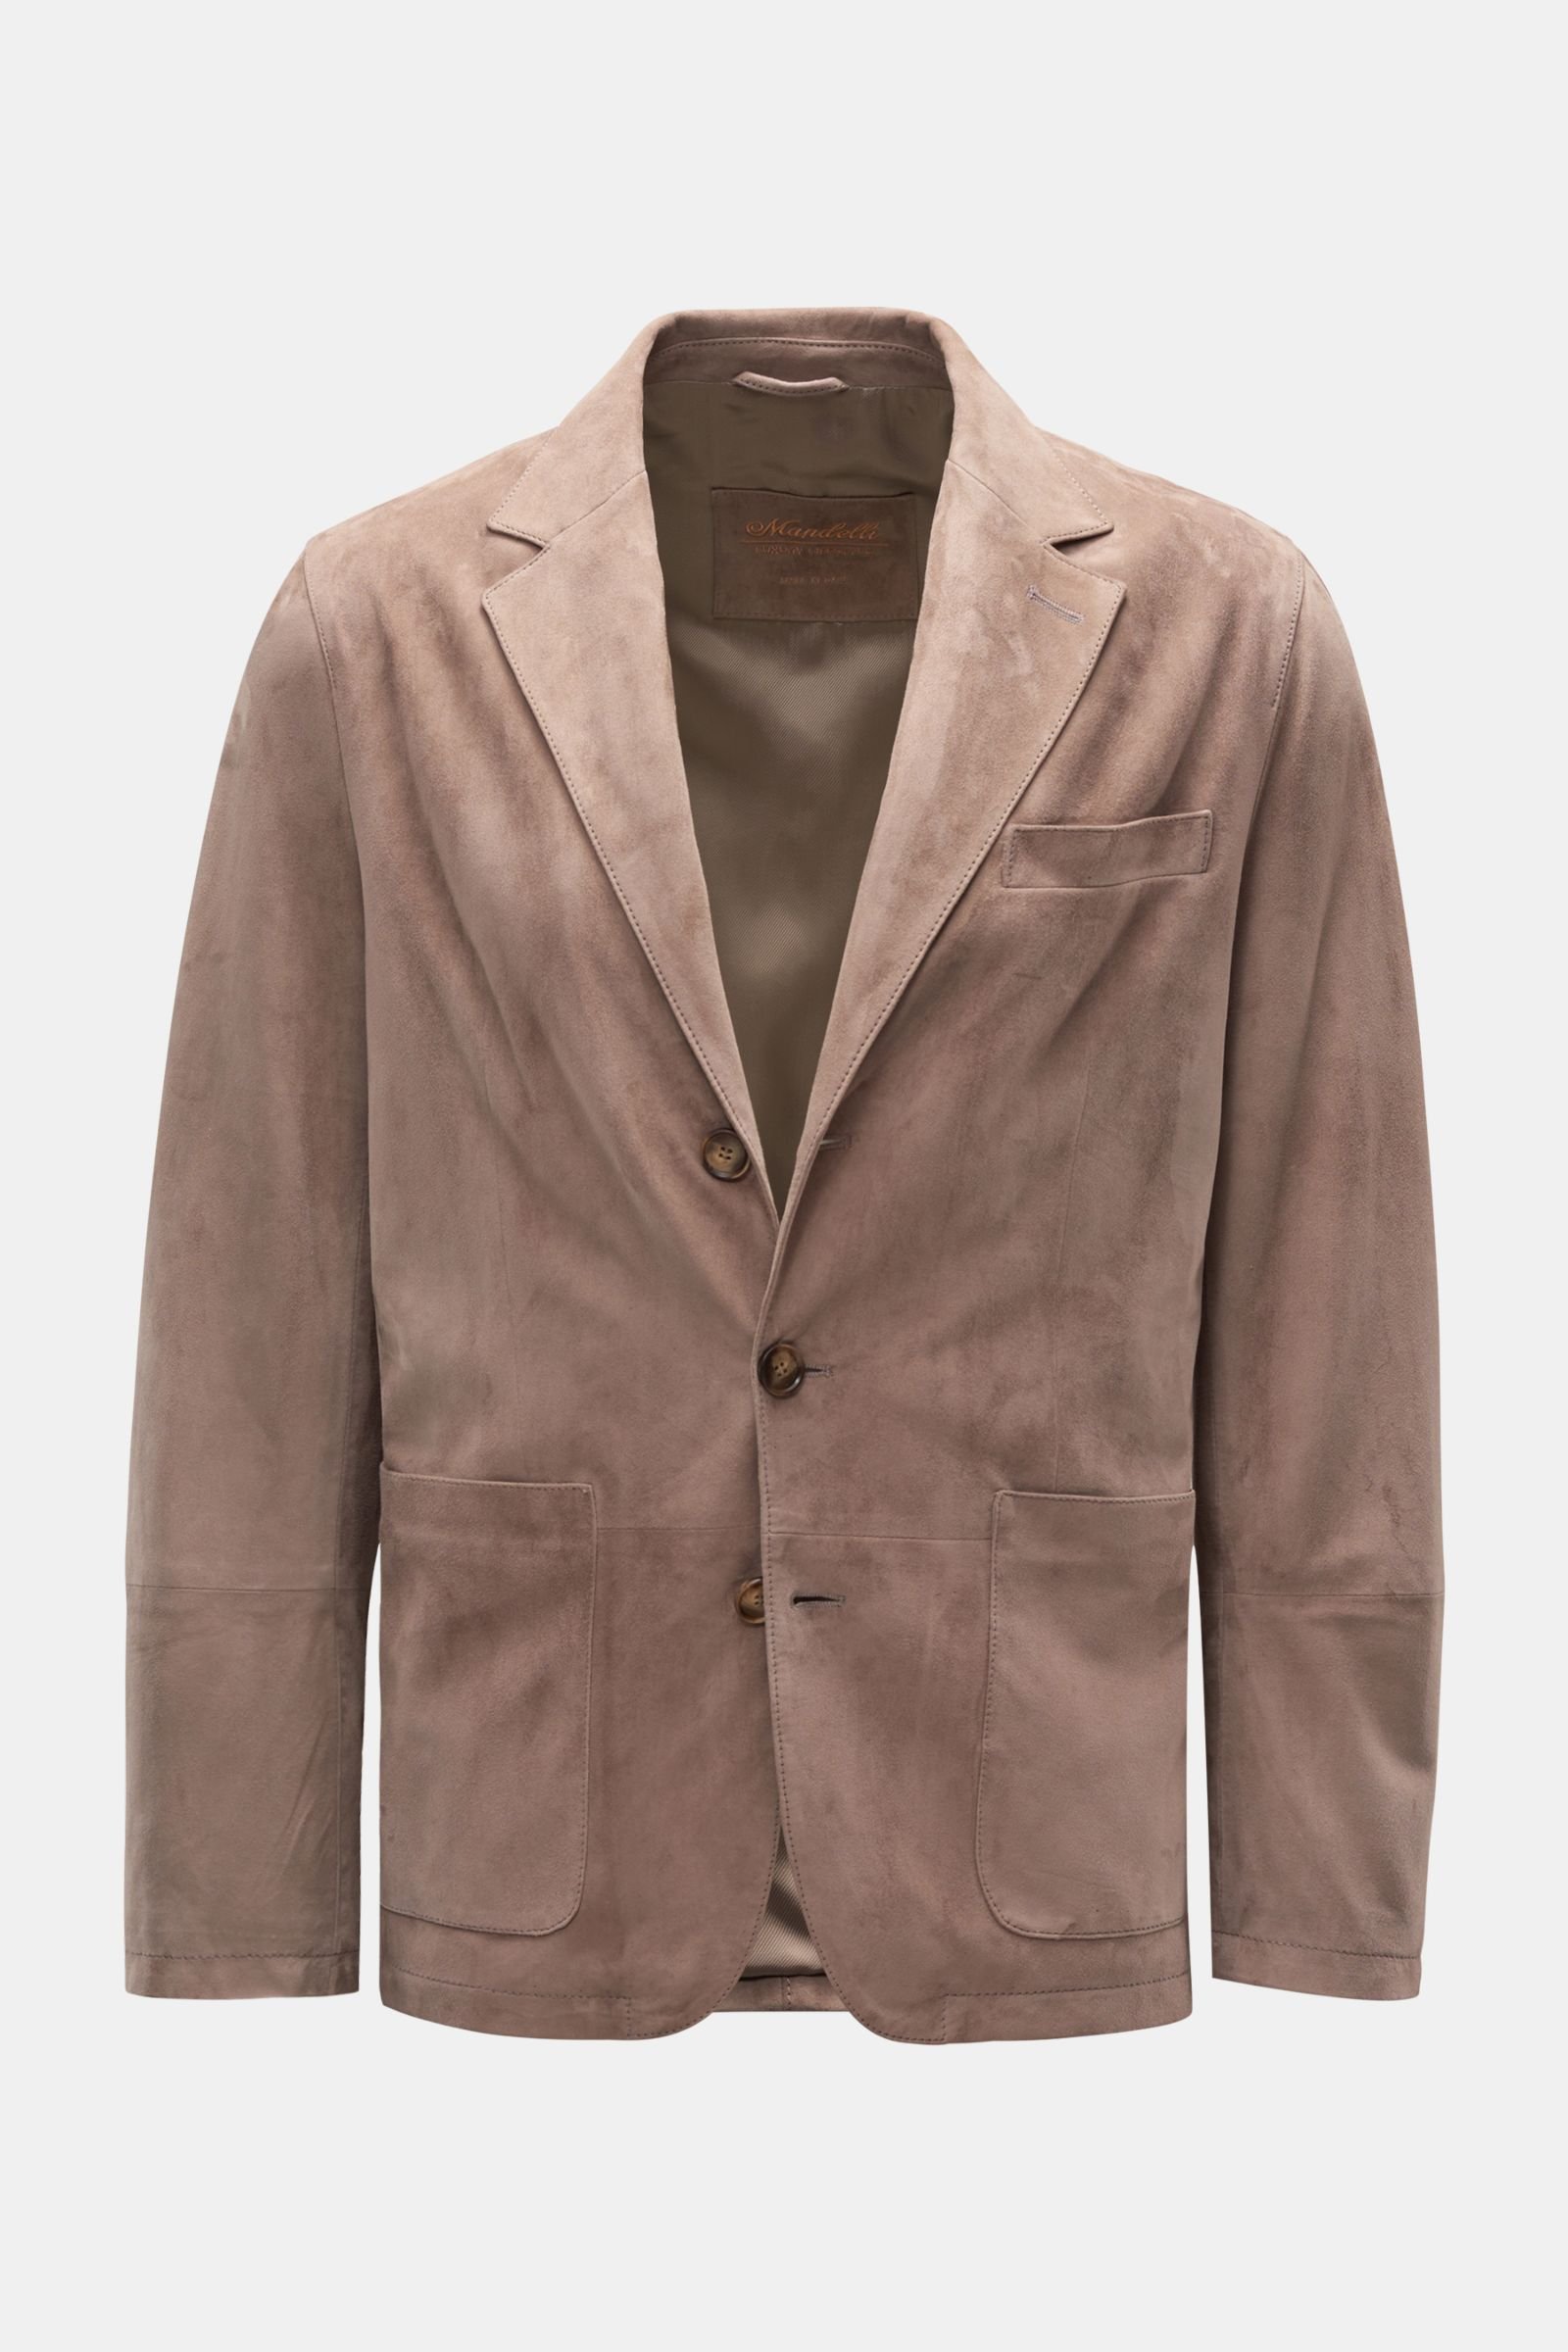 Suede smart-casual jacket grey-brown